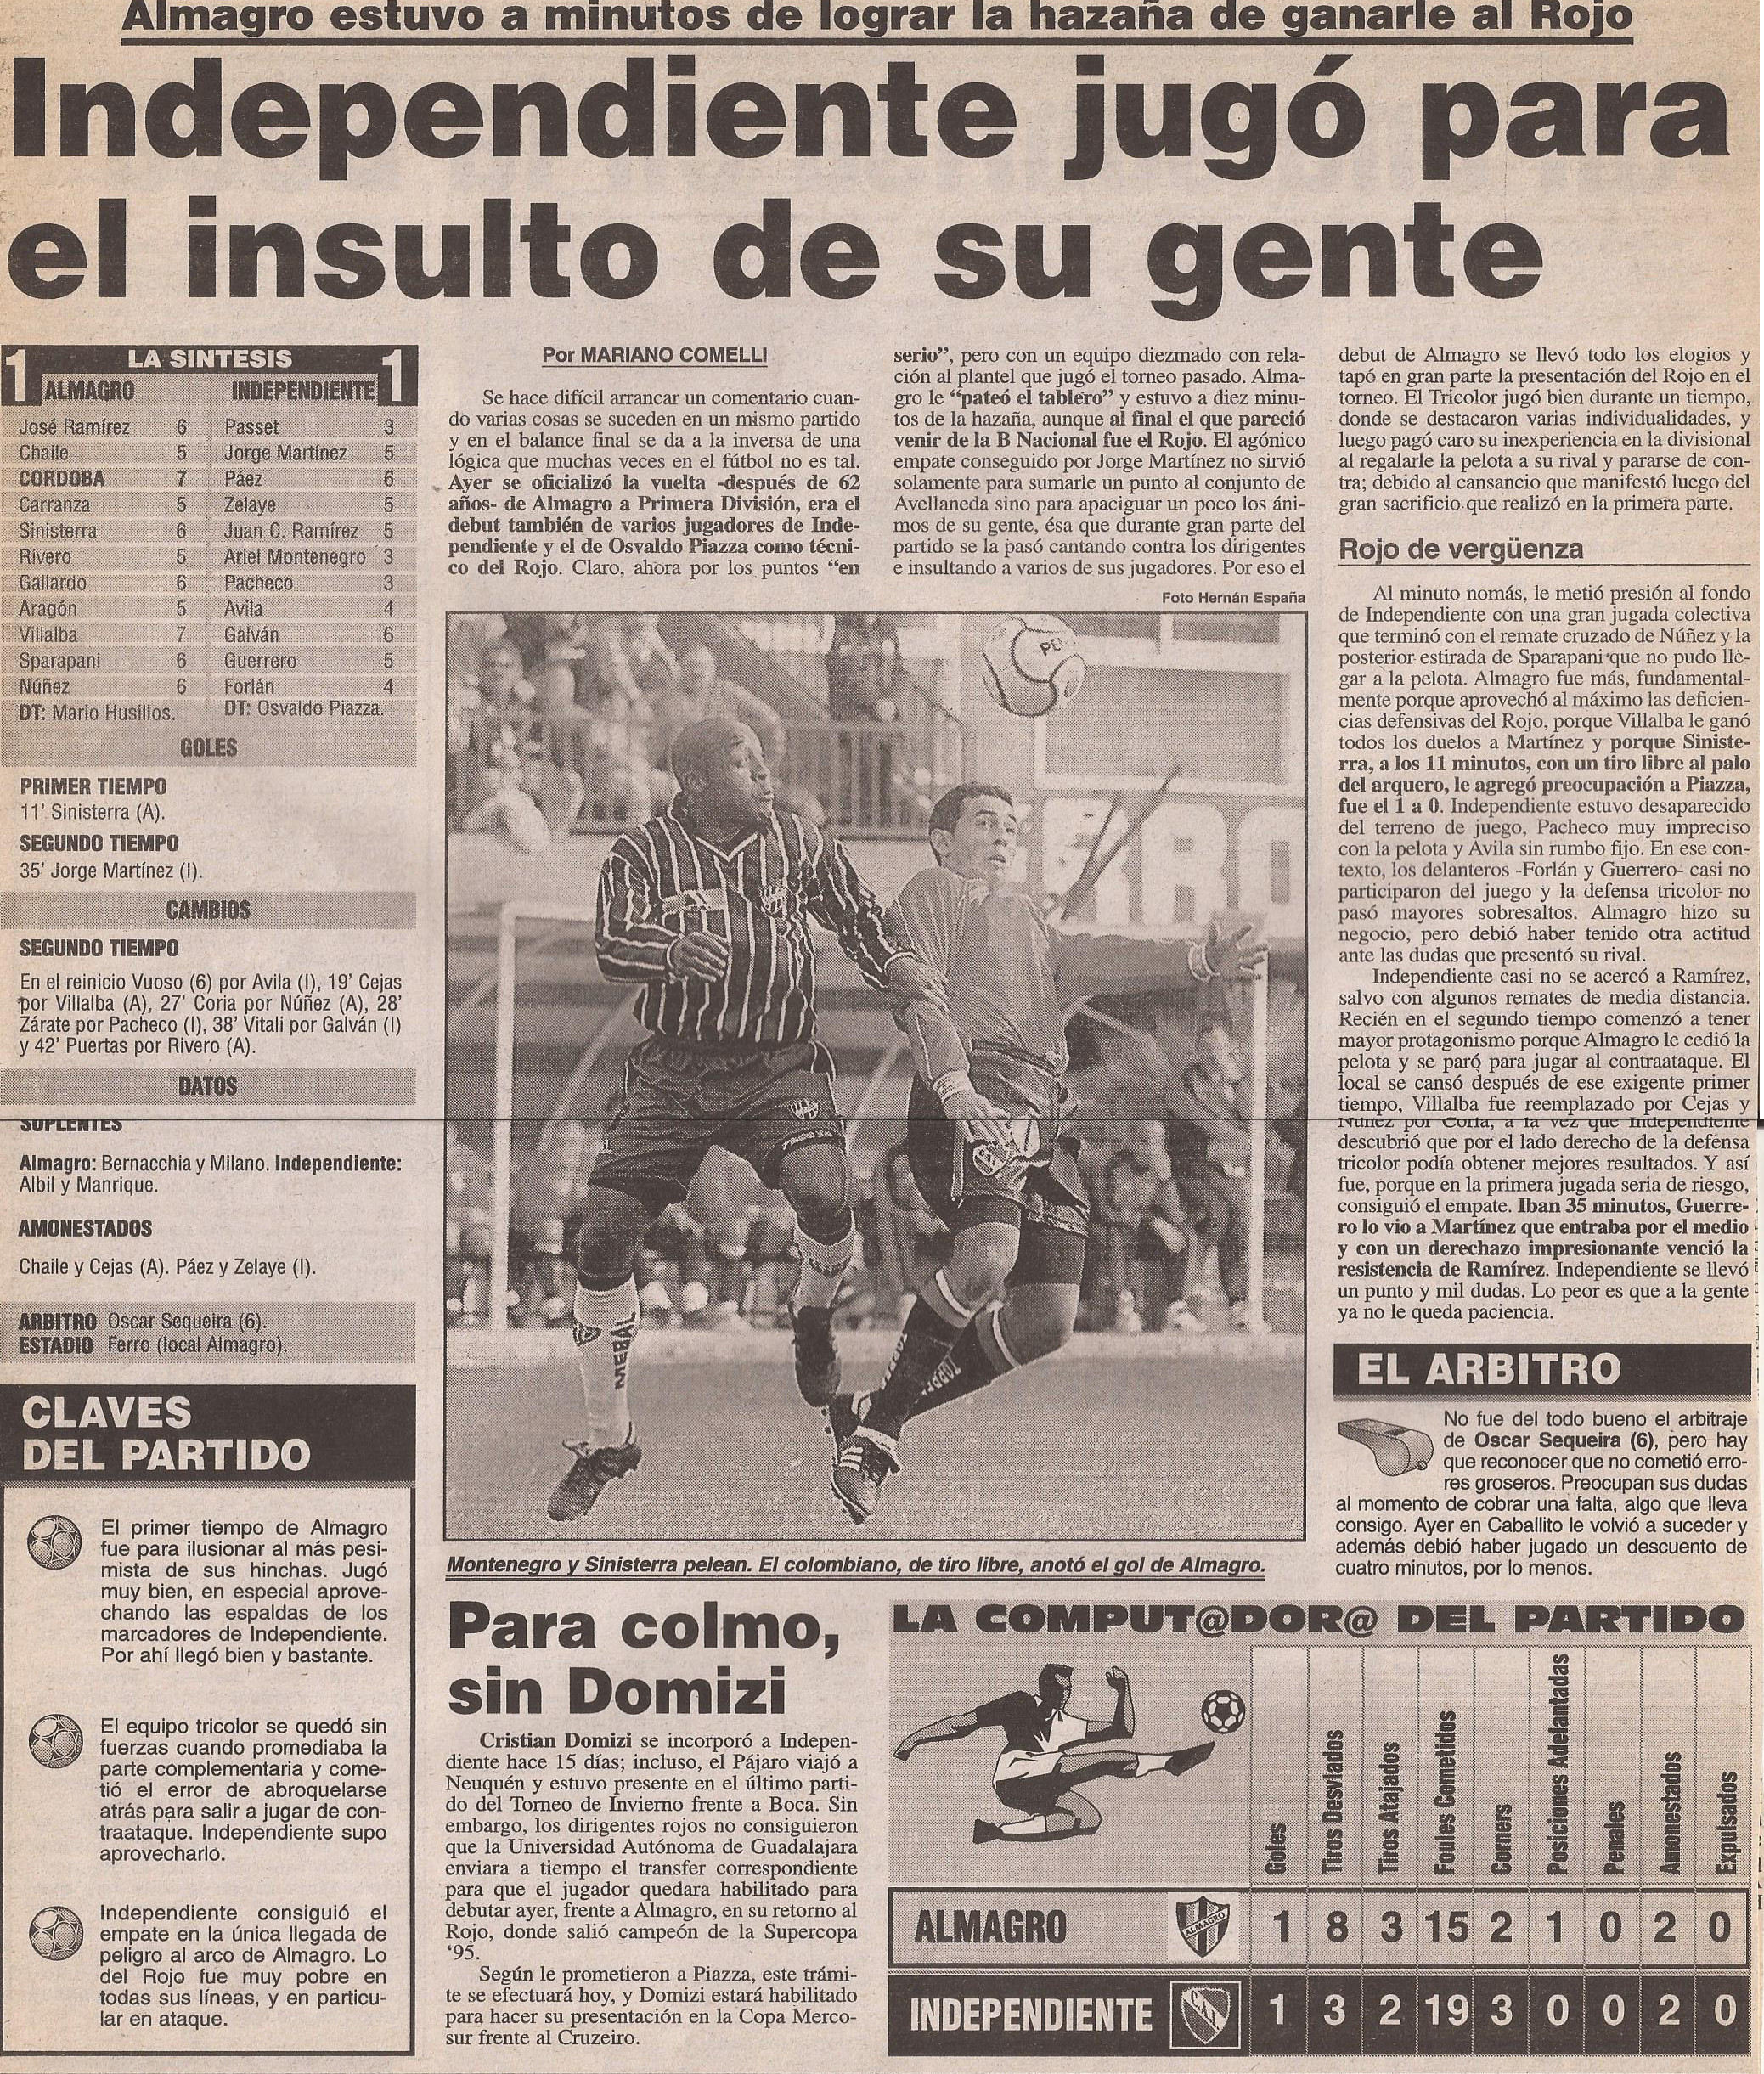 2000-01 Primera Division - Almagro vs Independiente - Diario Popular